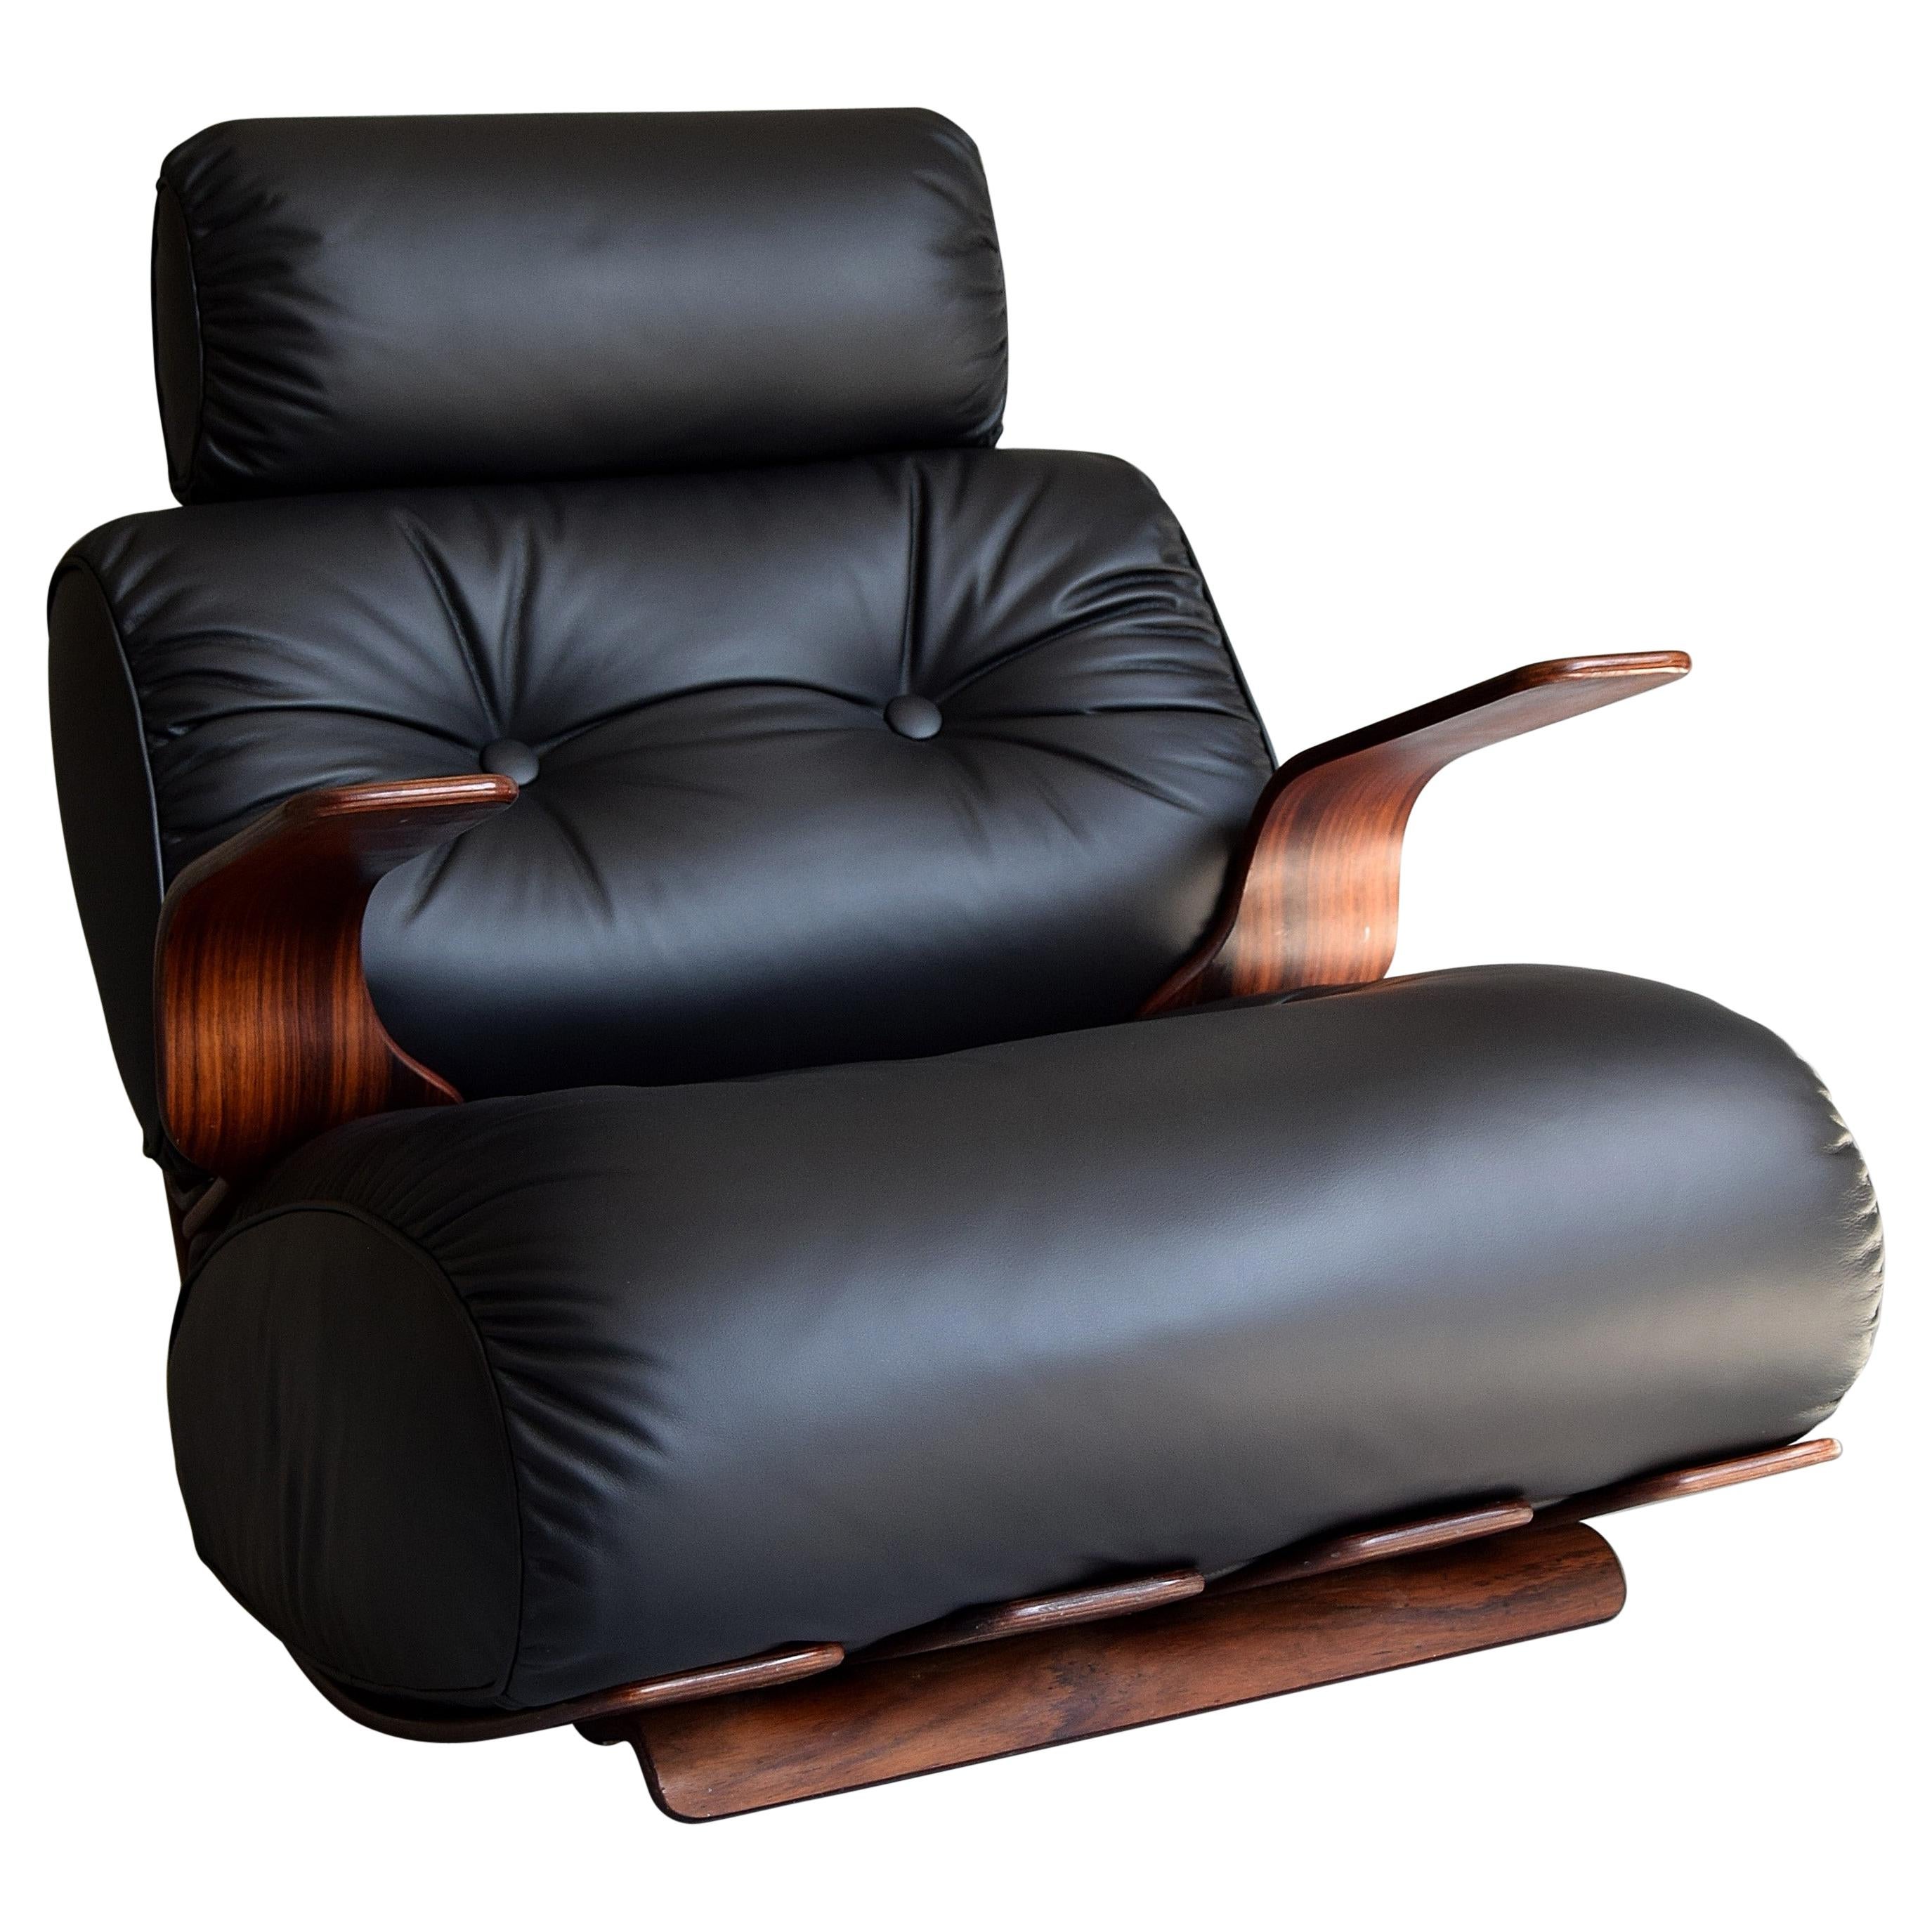 Chaise longue / à bascule élégante et extrêmement confortable fabriquée dans les années 1970. La chaise a une structure sophistiquée en contreplaqué plié avec un placage en bois de rose au grain profond et chaud.
Les nouveaux coussins rembourrés en